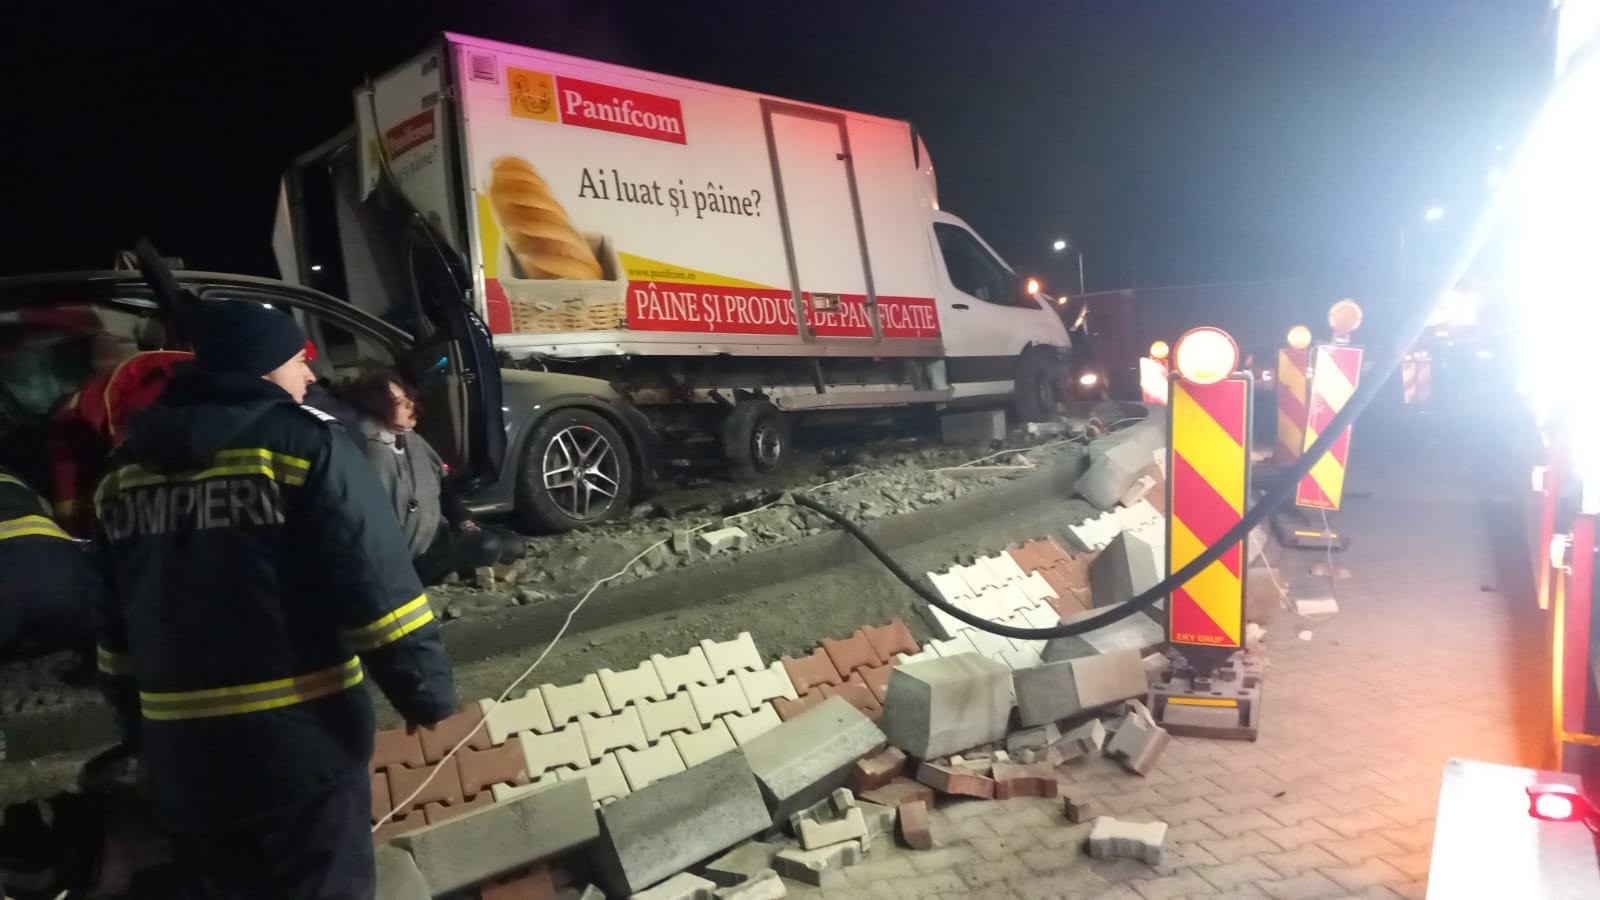  Un autoturism a izbit violent un camion de transport pâine în sensul giratoriu care se construieşte în Târgu Frumos